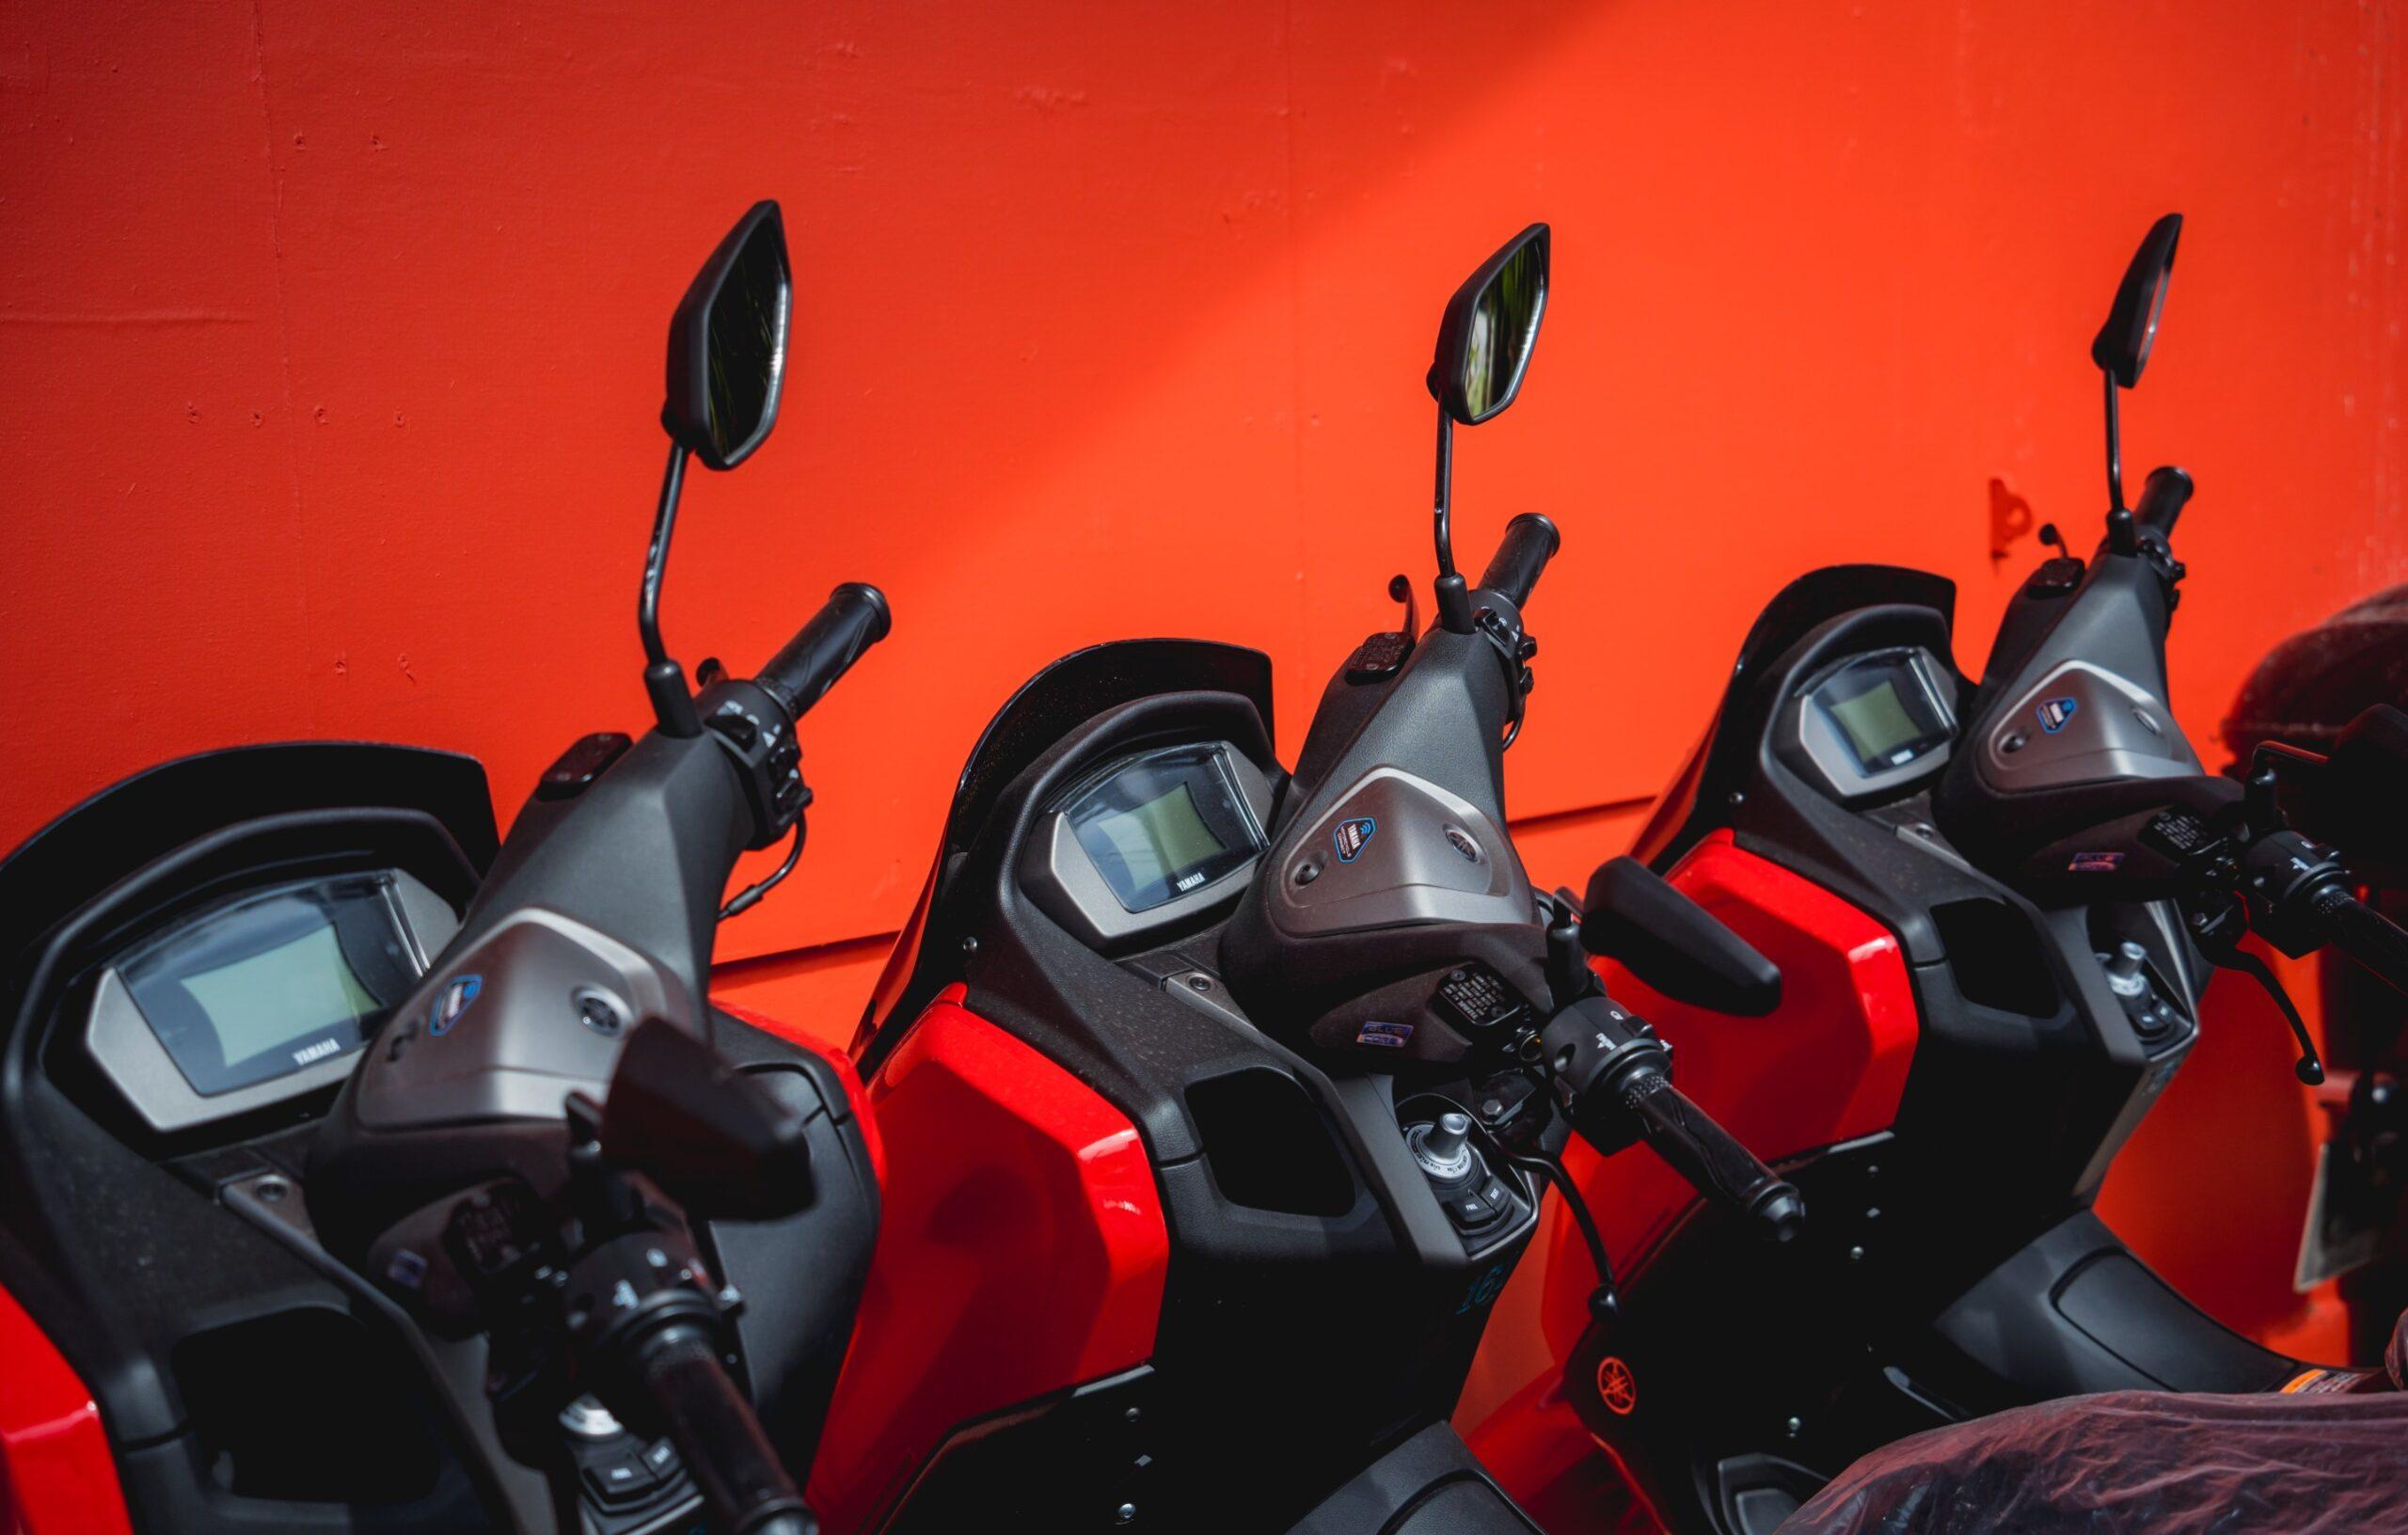 I migliori accessori Smart per moto della primavera 2023 